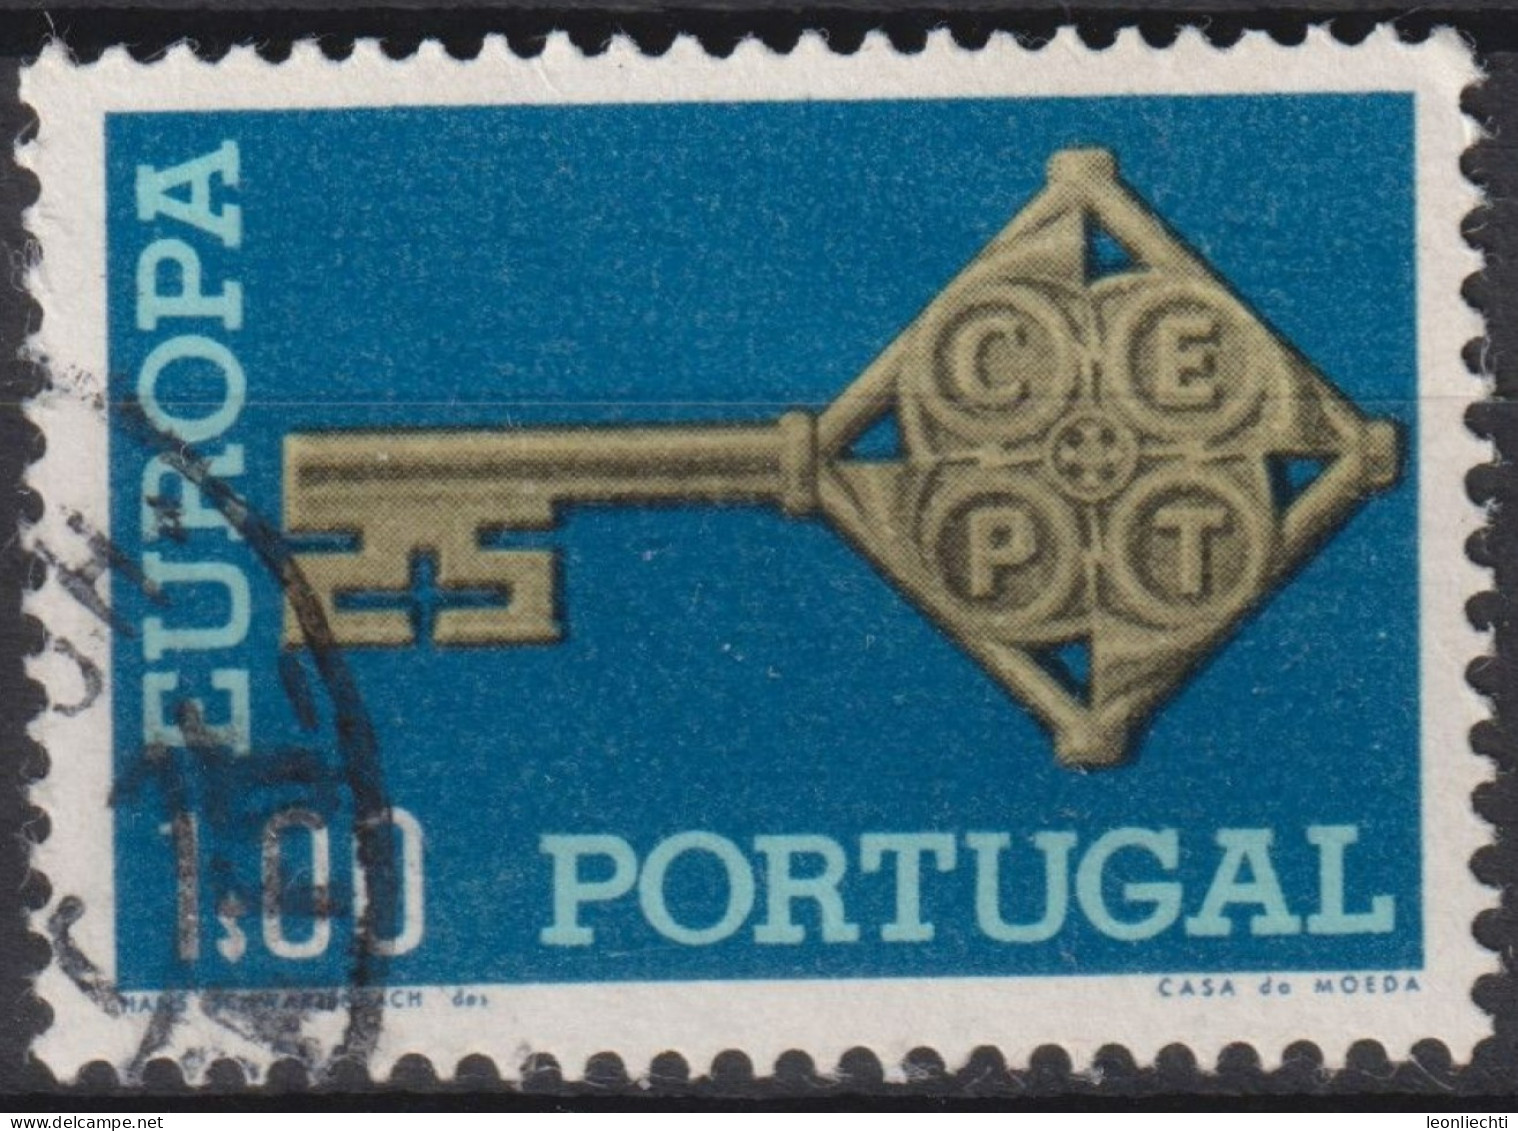 1968 Portugal ° Mi:PT 1051, Sn:PT 1019, Yt:PT 1032, Europa (C.E.P.T.) 1968 - Schlüssel - Oblitérés